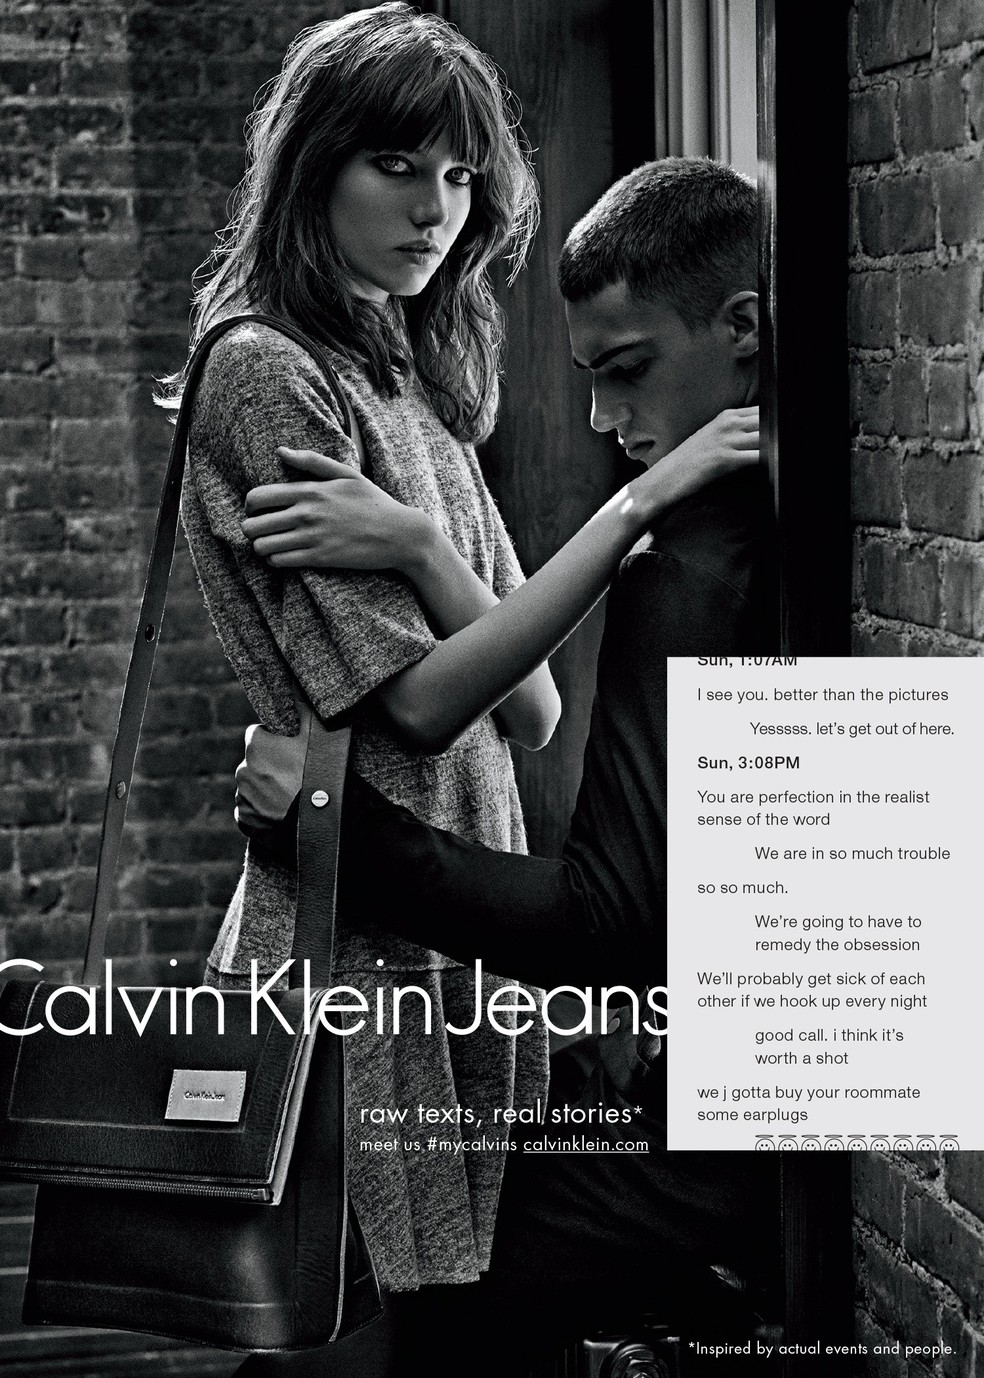 Icônico, atemporal, sexy: como a Calvin Klein revolucionou o jeans -  Revista Marie Claire